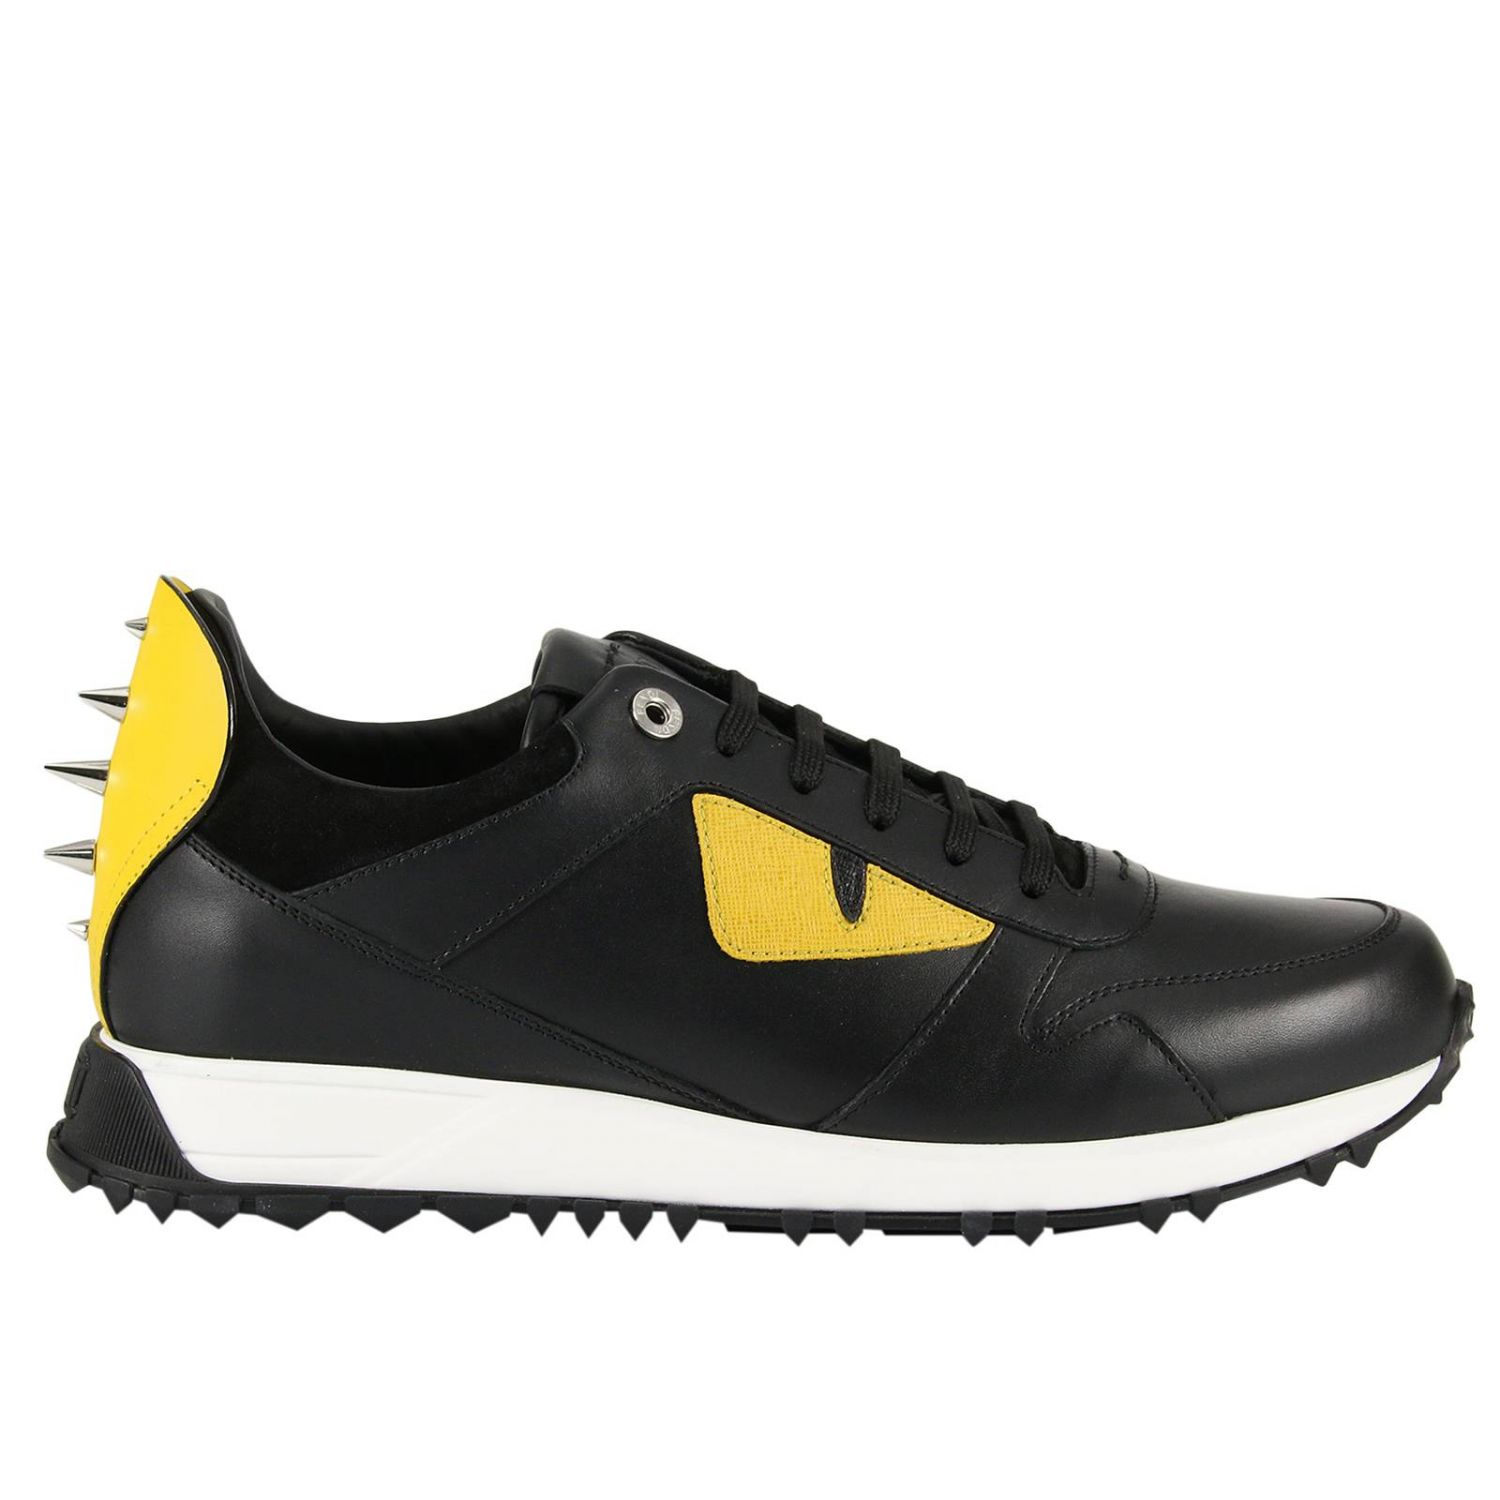 FENDI: Shoes men | Sneakers Fendi Men Black | Sneakers Fendi 7E0935 4R6 ...